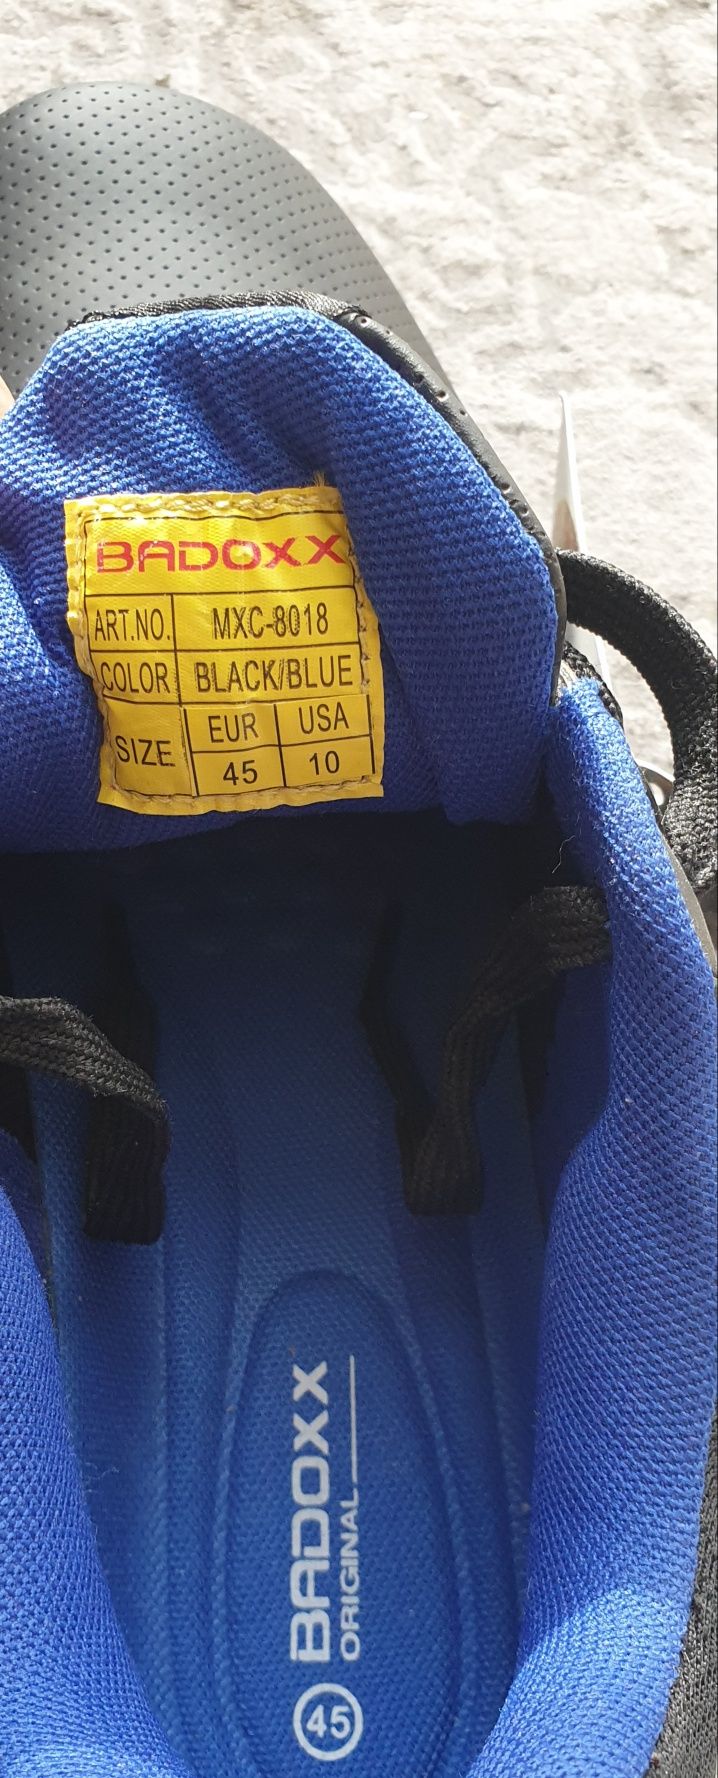 Buty męskie sportowe Badoxx, wkładka dł 28 cm!